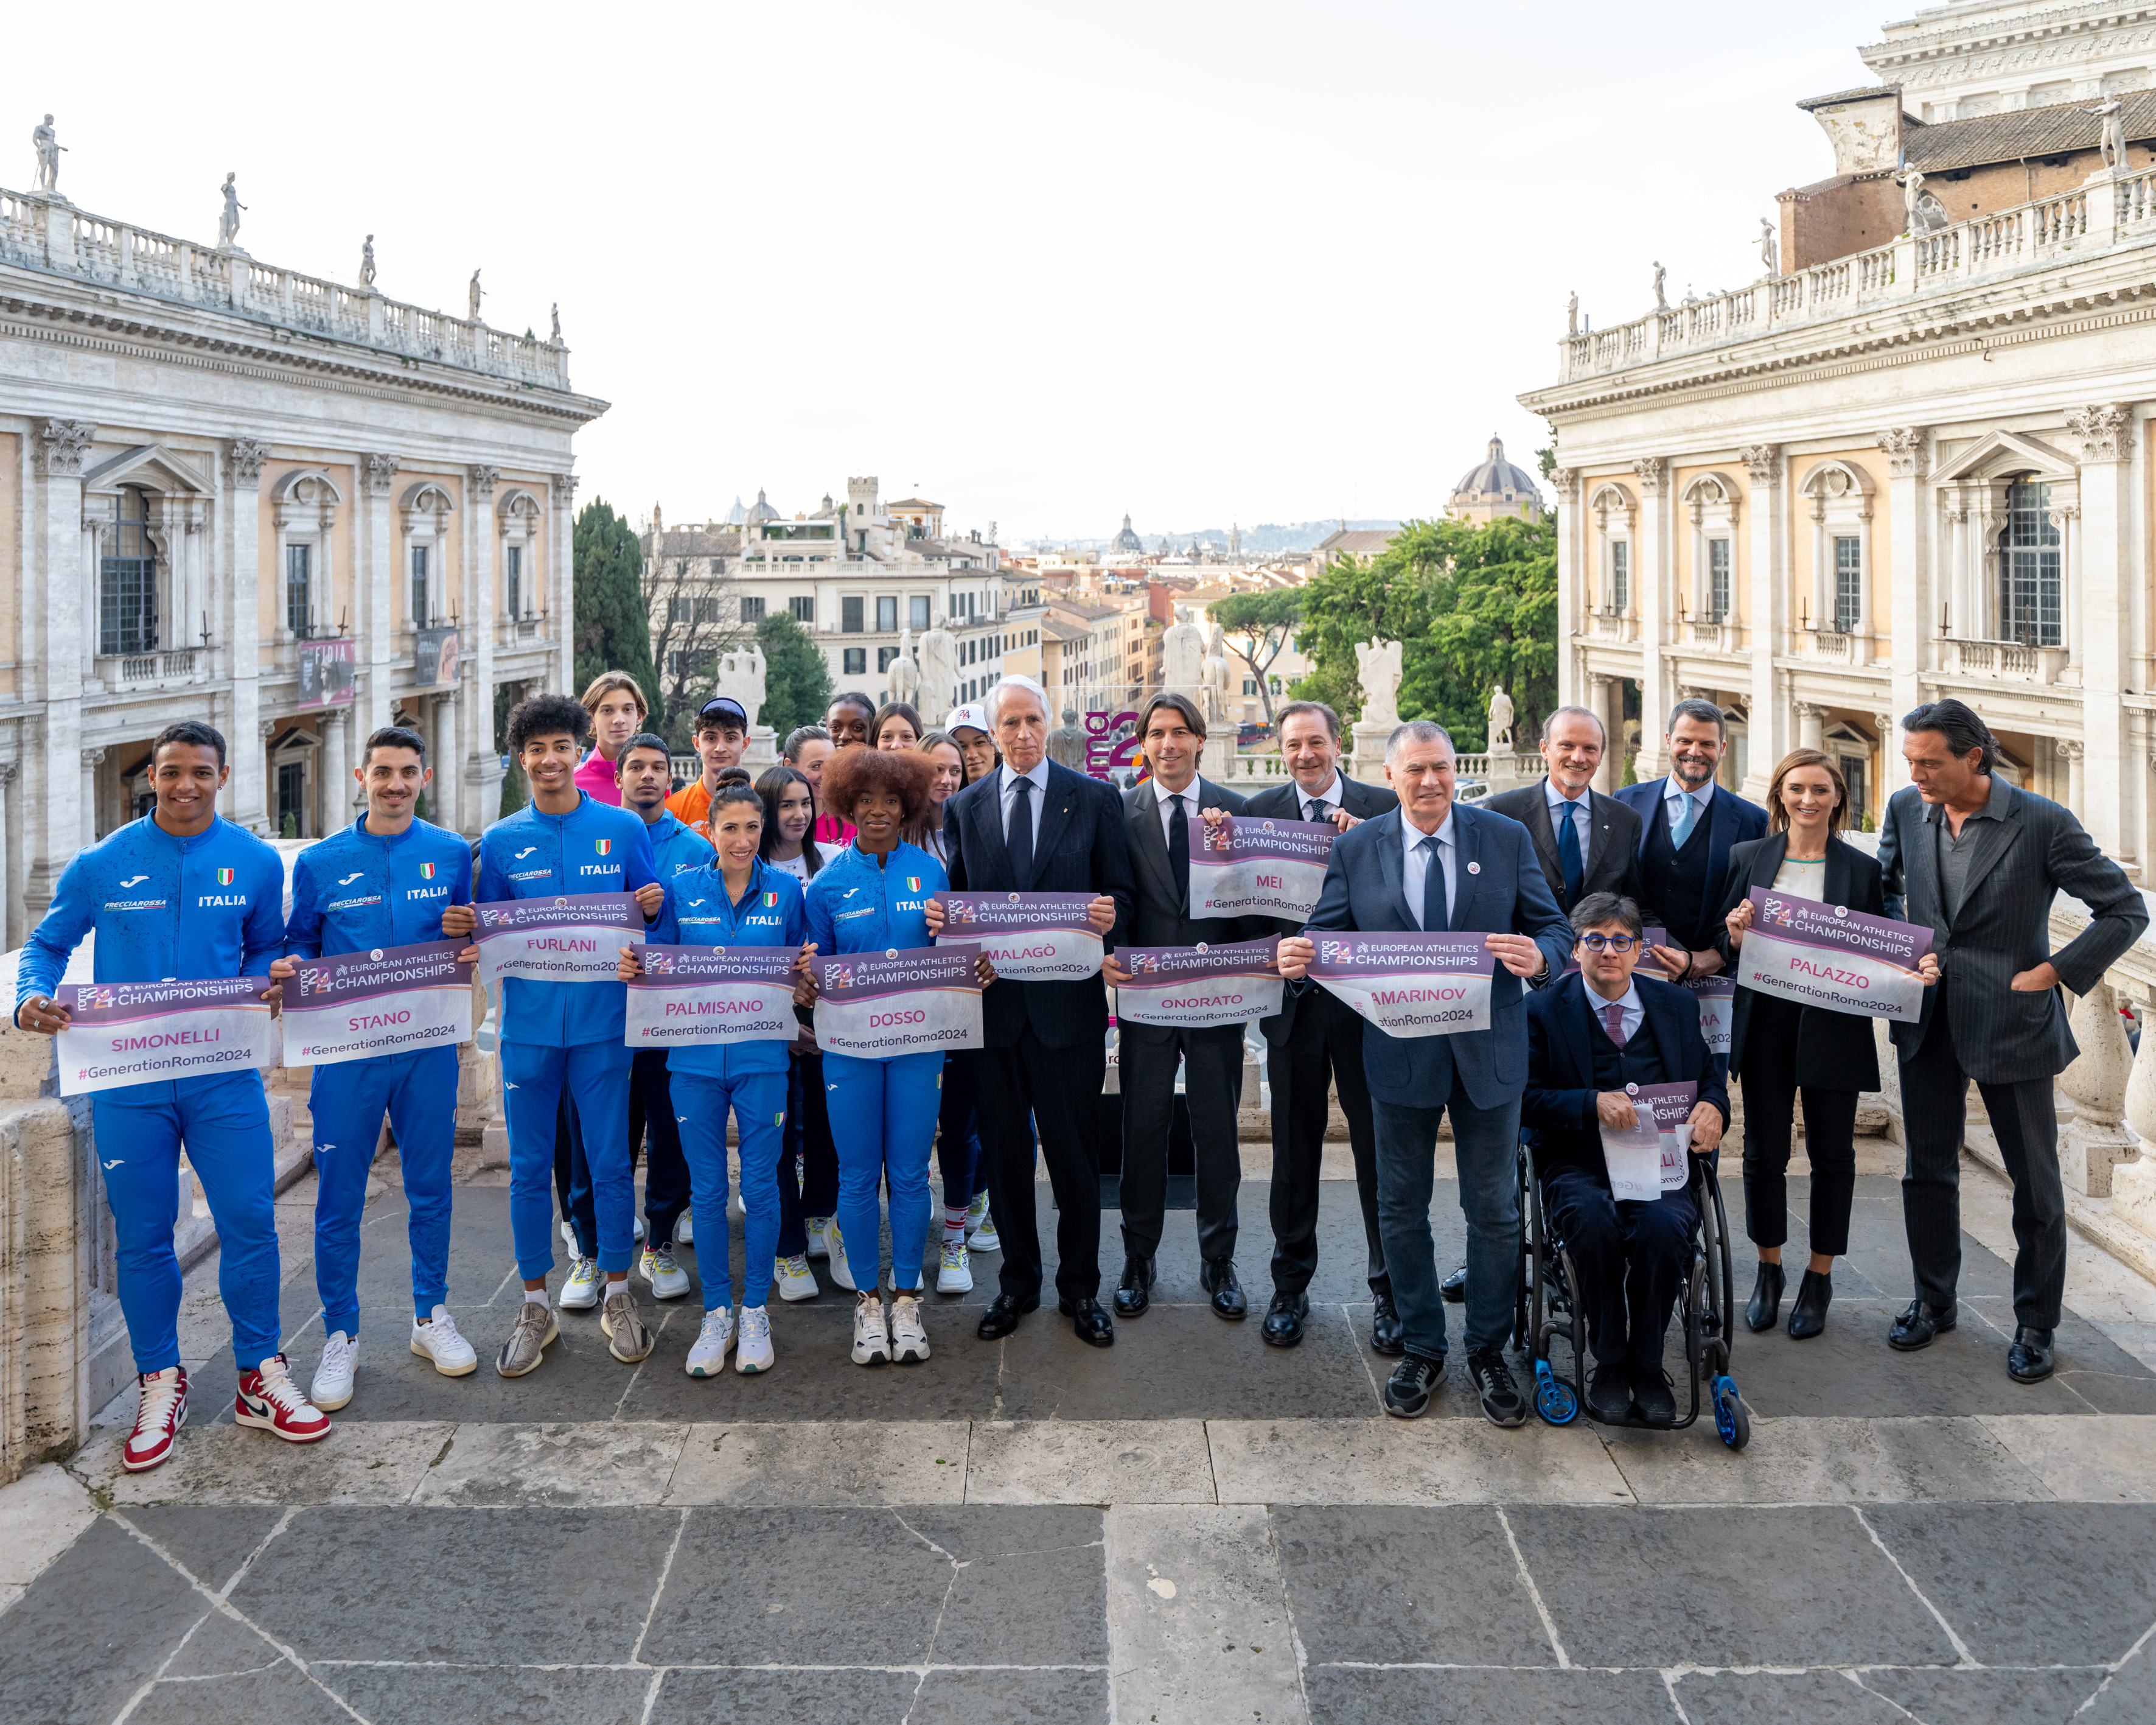 Rome 2024, les Championnats d’Europe d’athlétisme présentés au Capitole